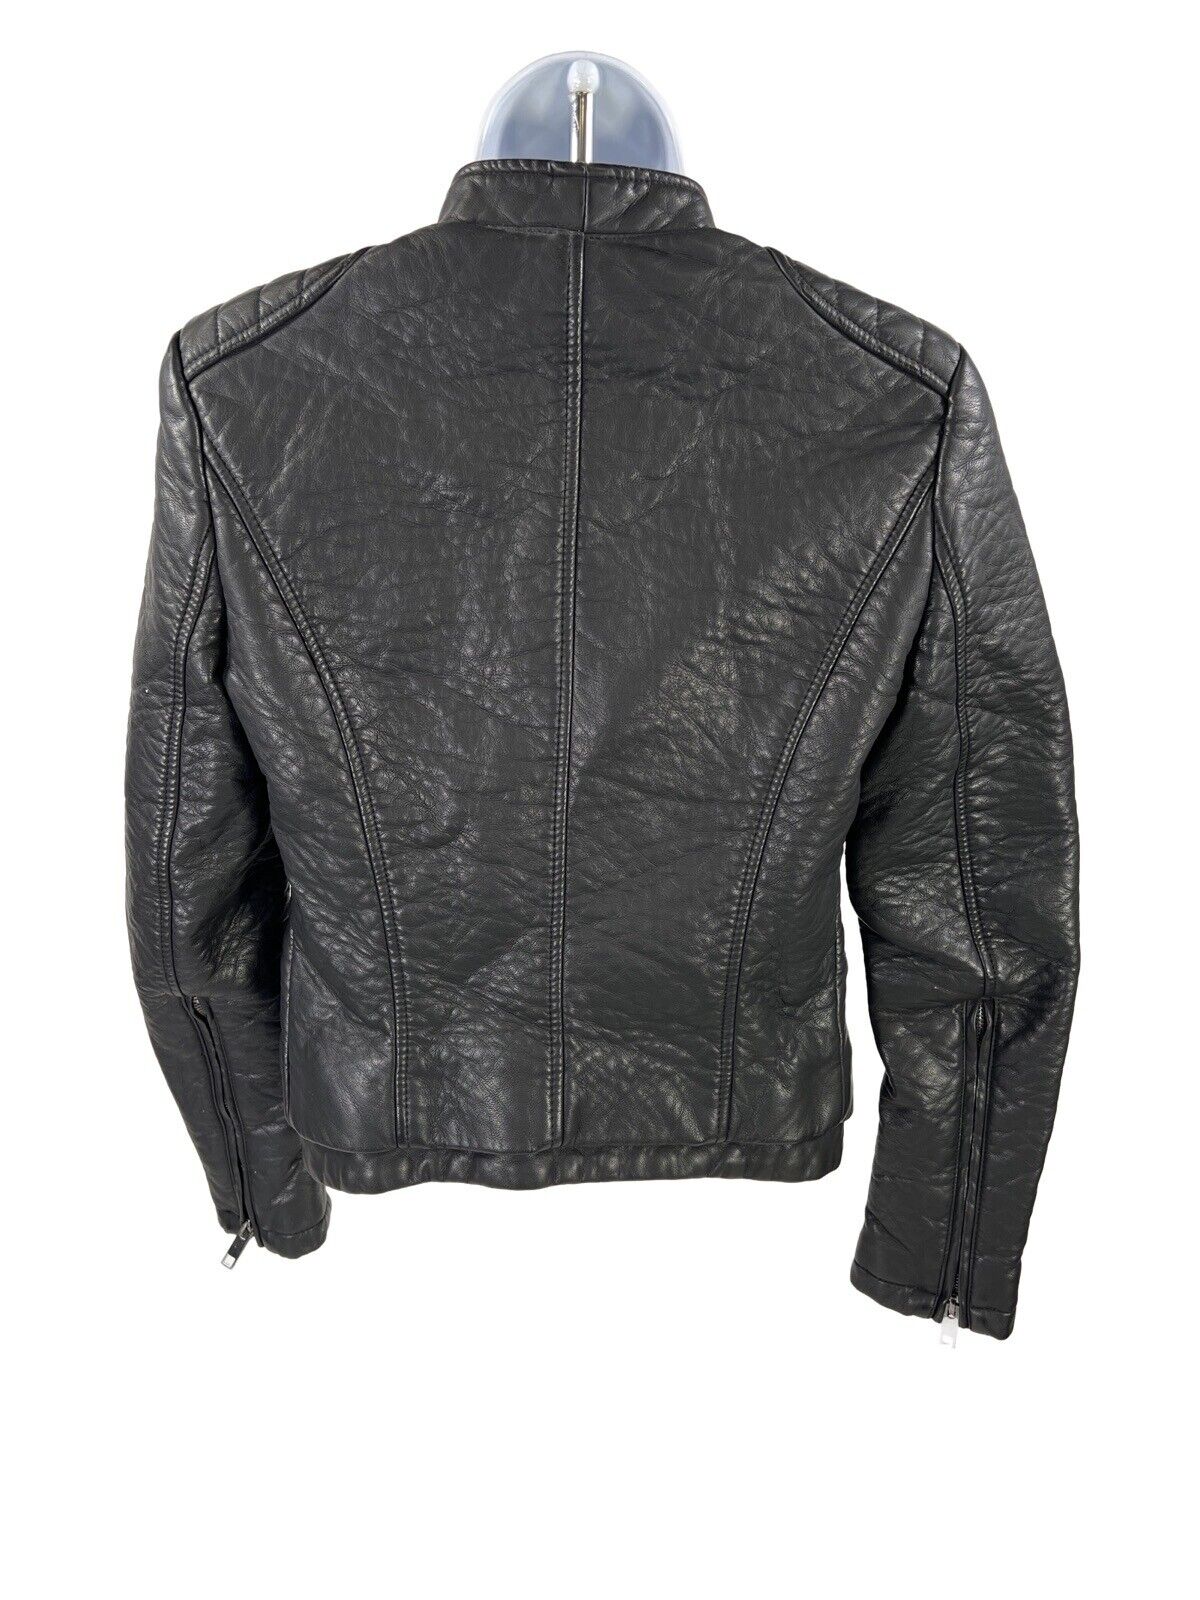 Zara Basic Women's Black Faux Leather Long Sleeve Open Moto Jacket - S